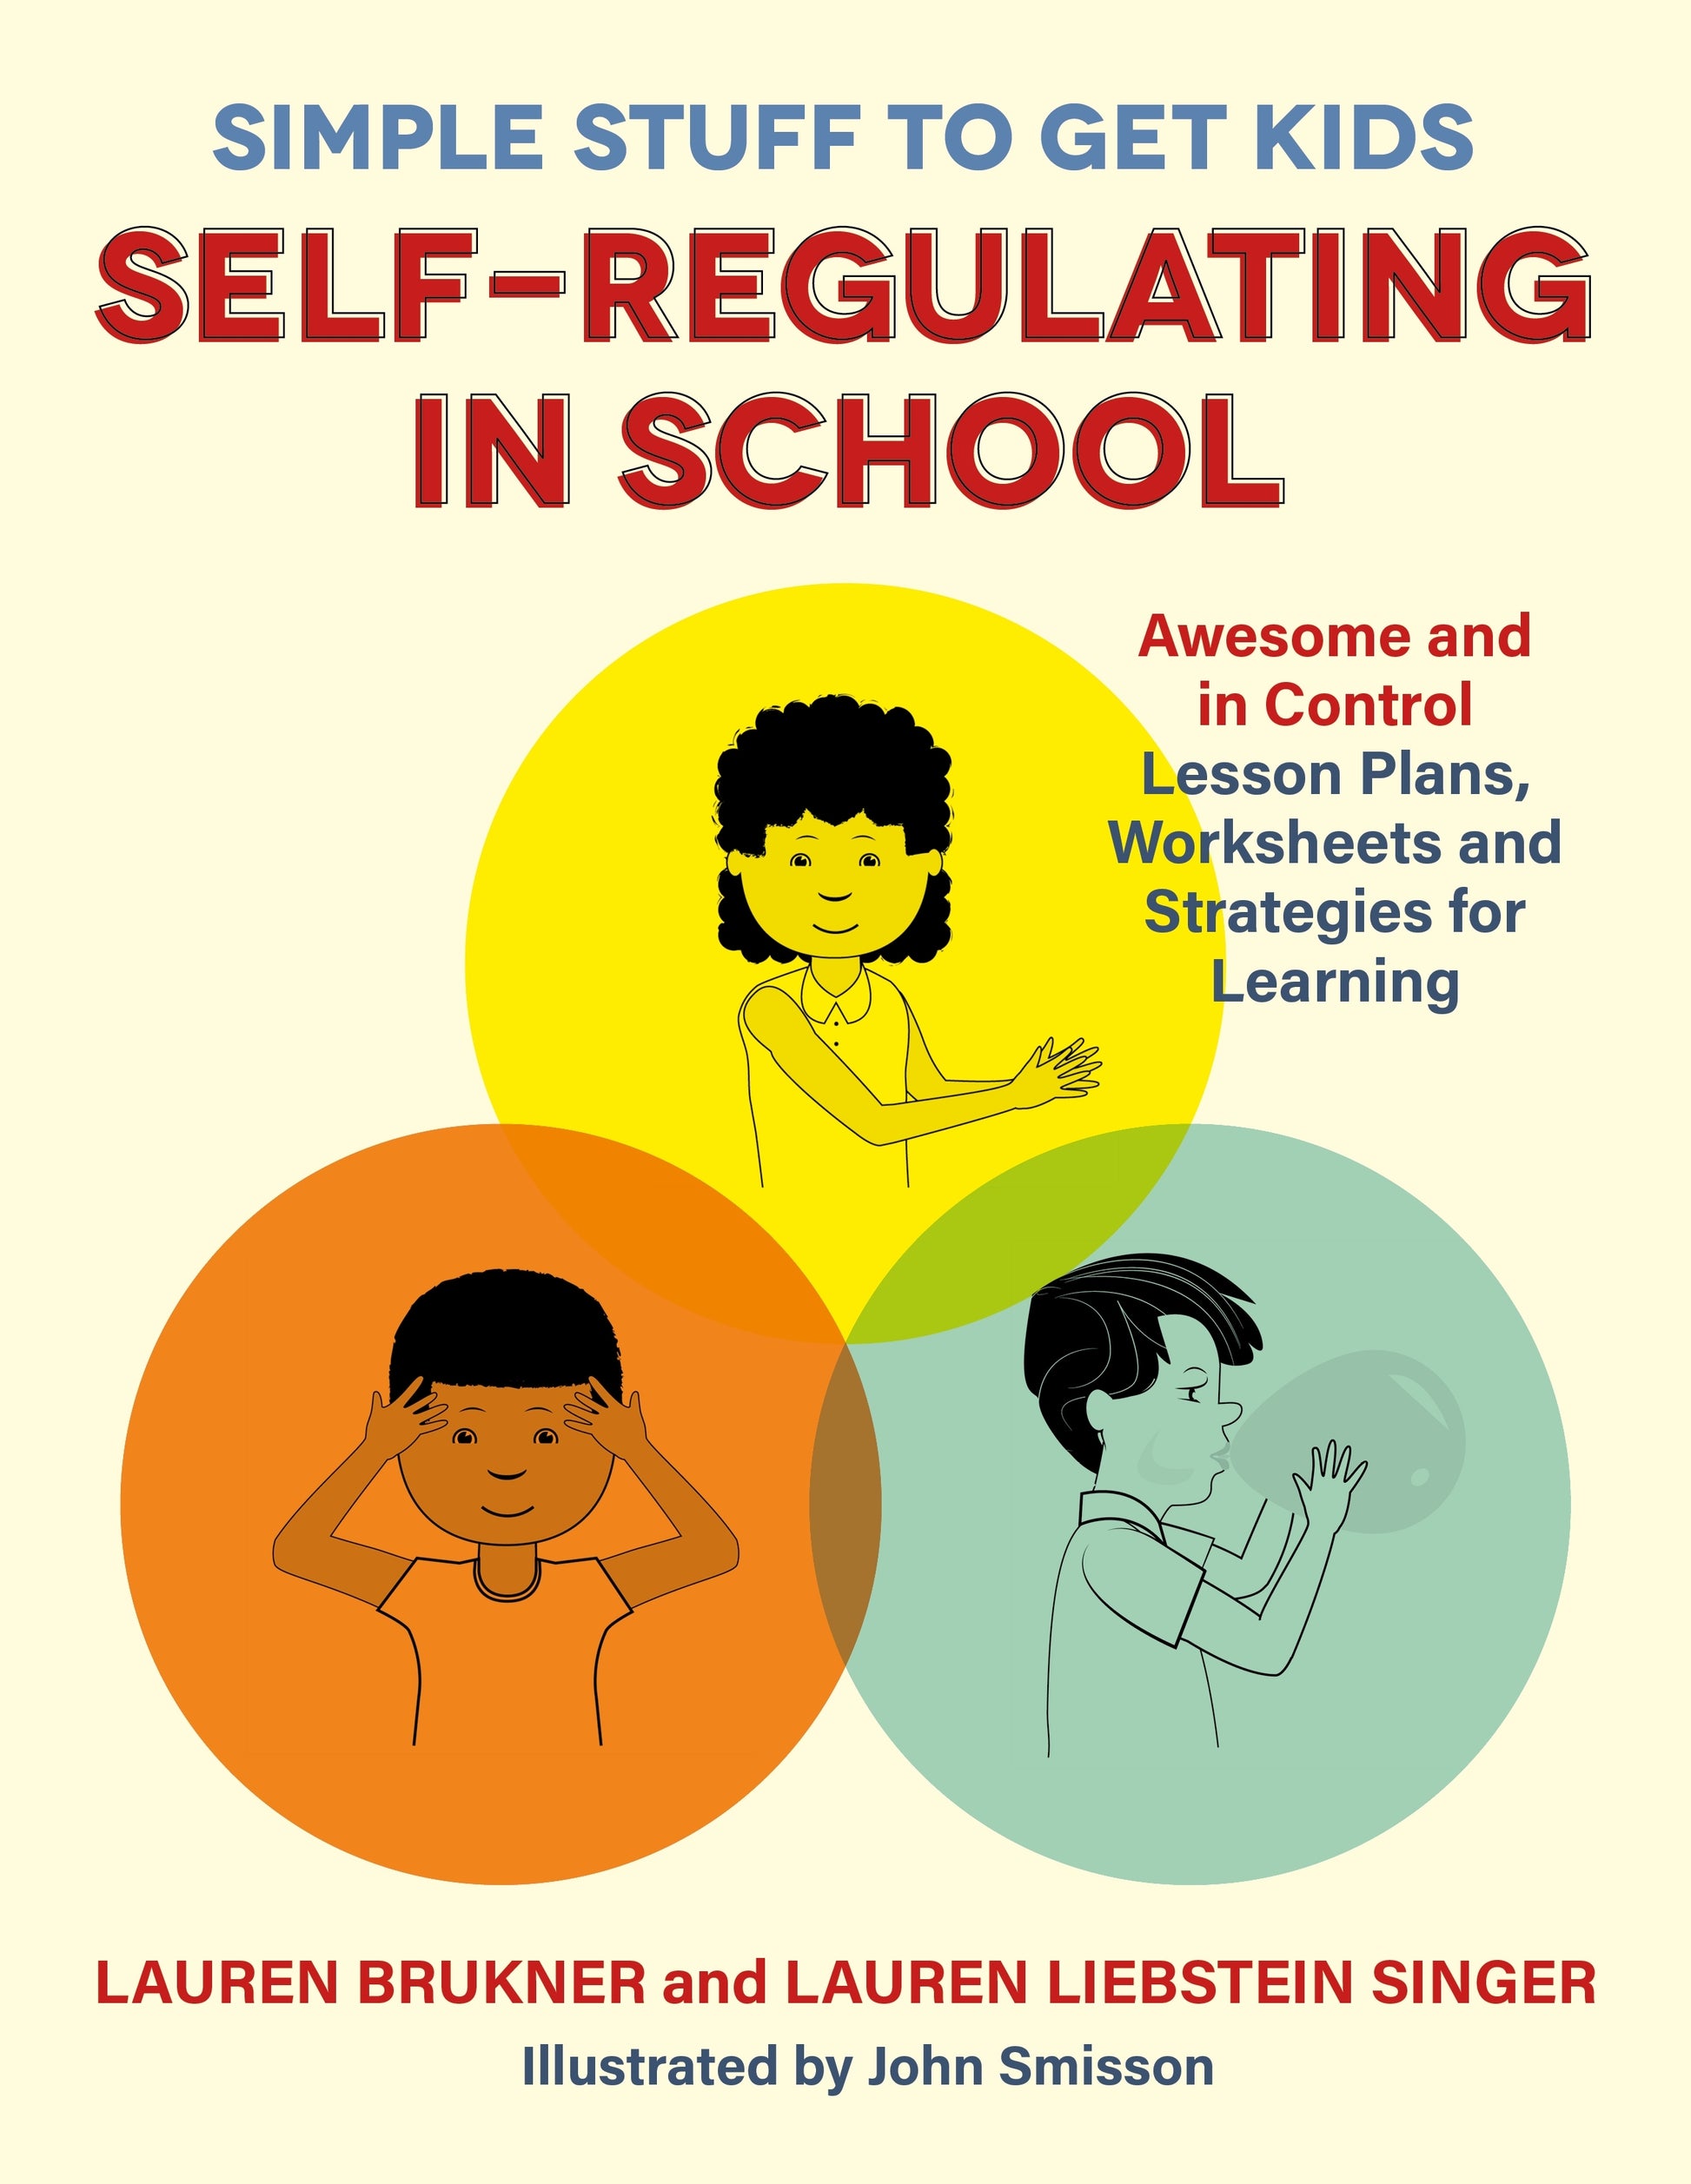 Simple Stuff to Get Kids Self-Regulating in School by Lauren Brukner, Lauren Liebstein Singer, John Smisson